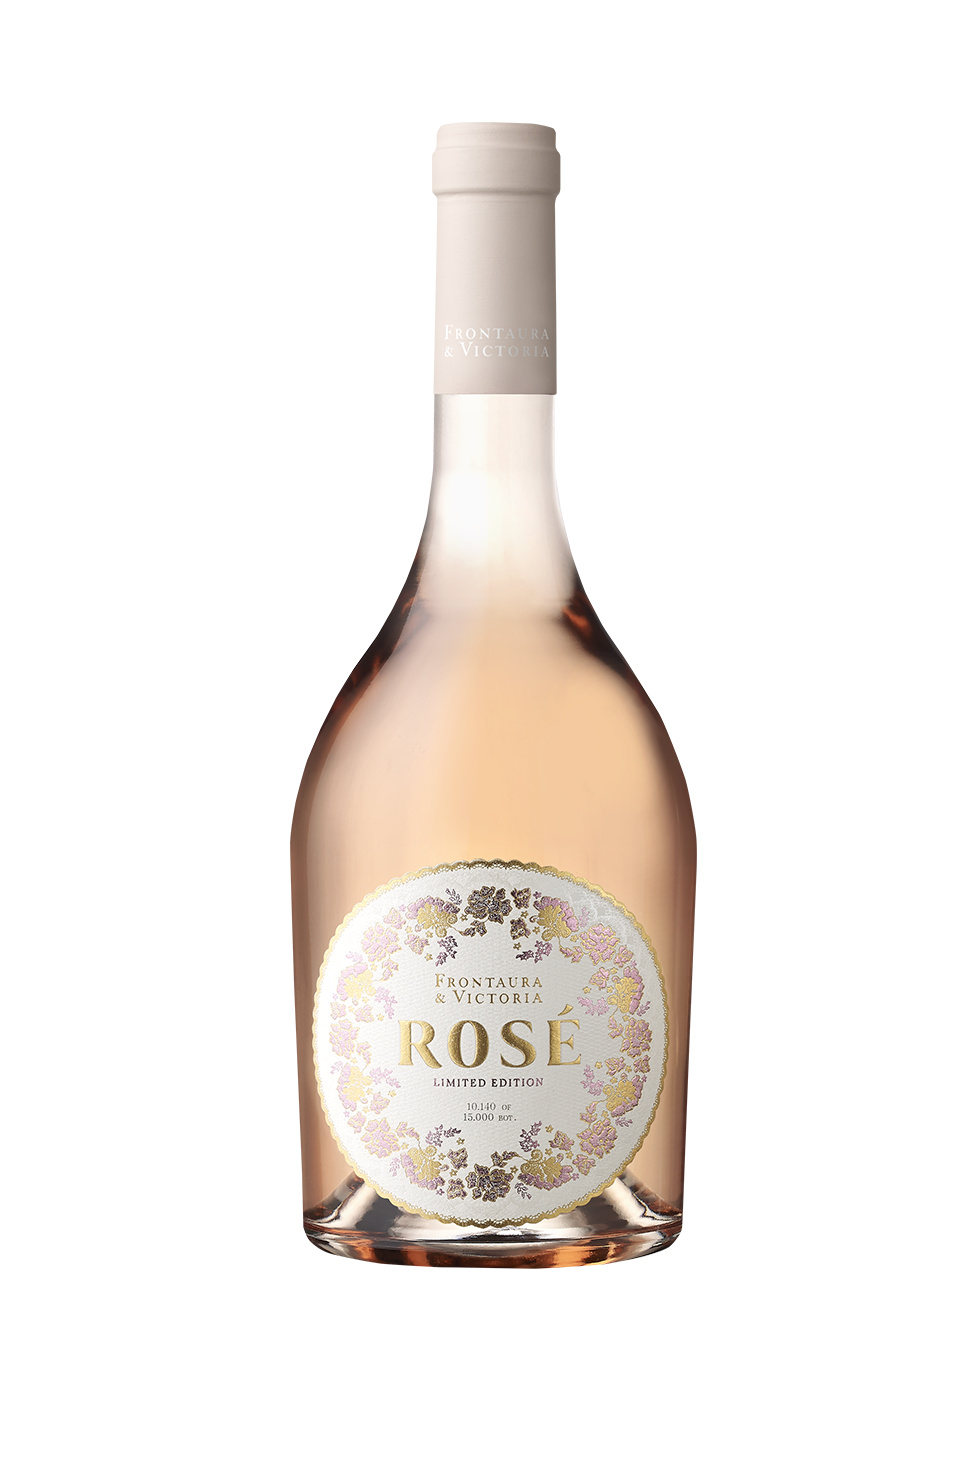 Rosé Wine Frontaura & Victoria Rosé 2021